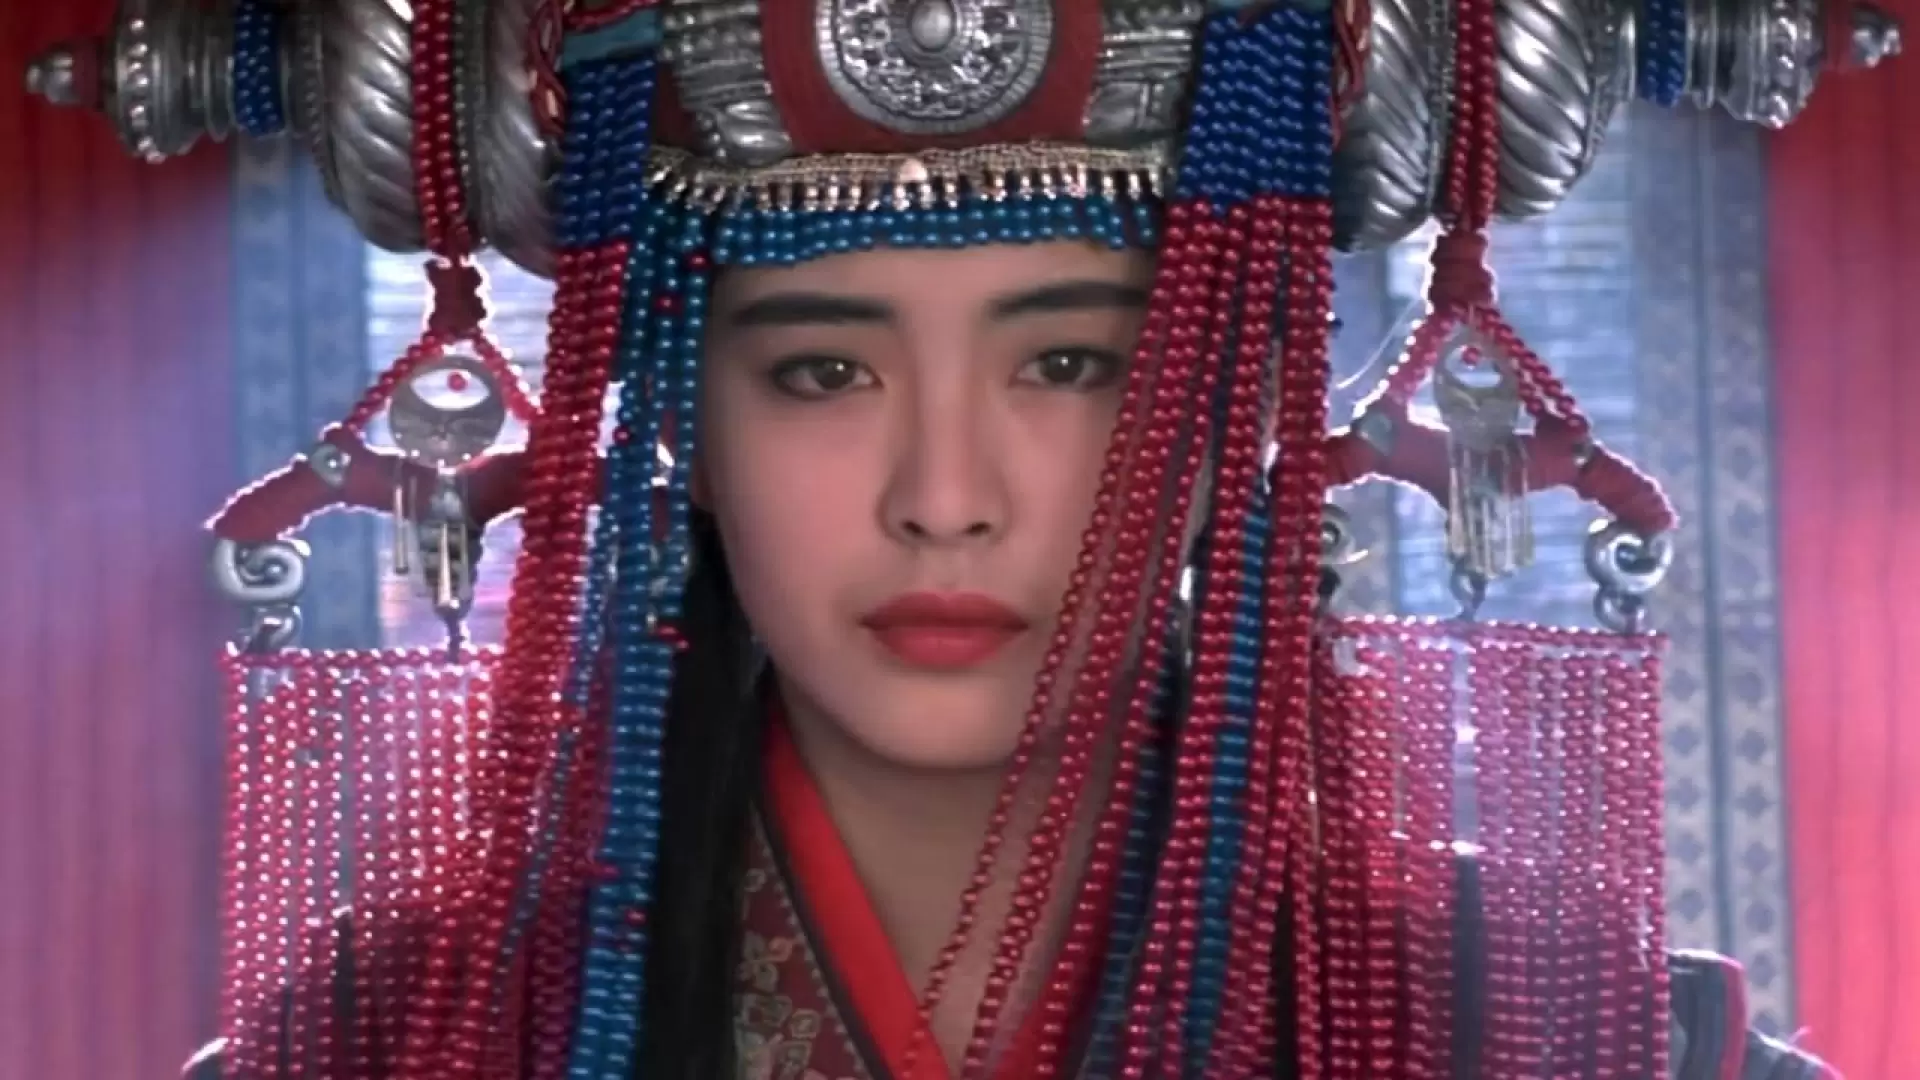 دانلود فیلم Sien nui yau wan II yan gaan do (A Chinese Ghost Story II) 1990